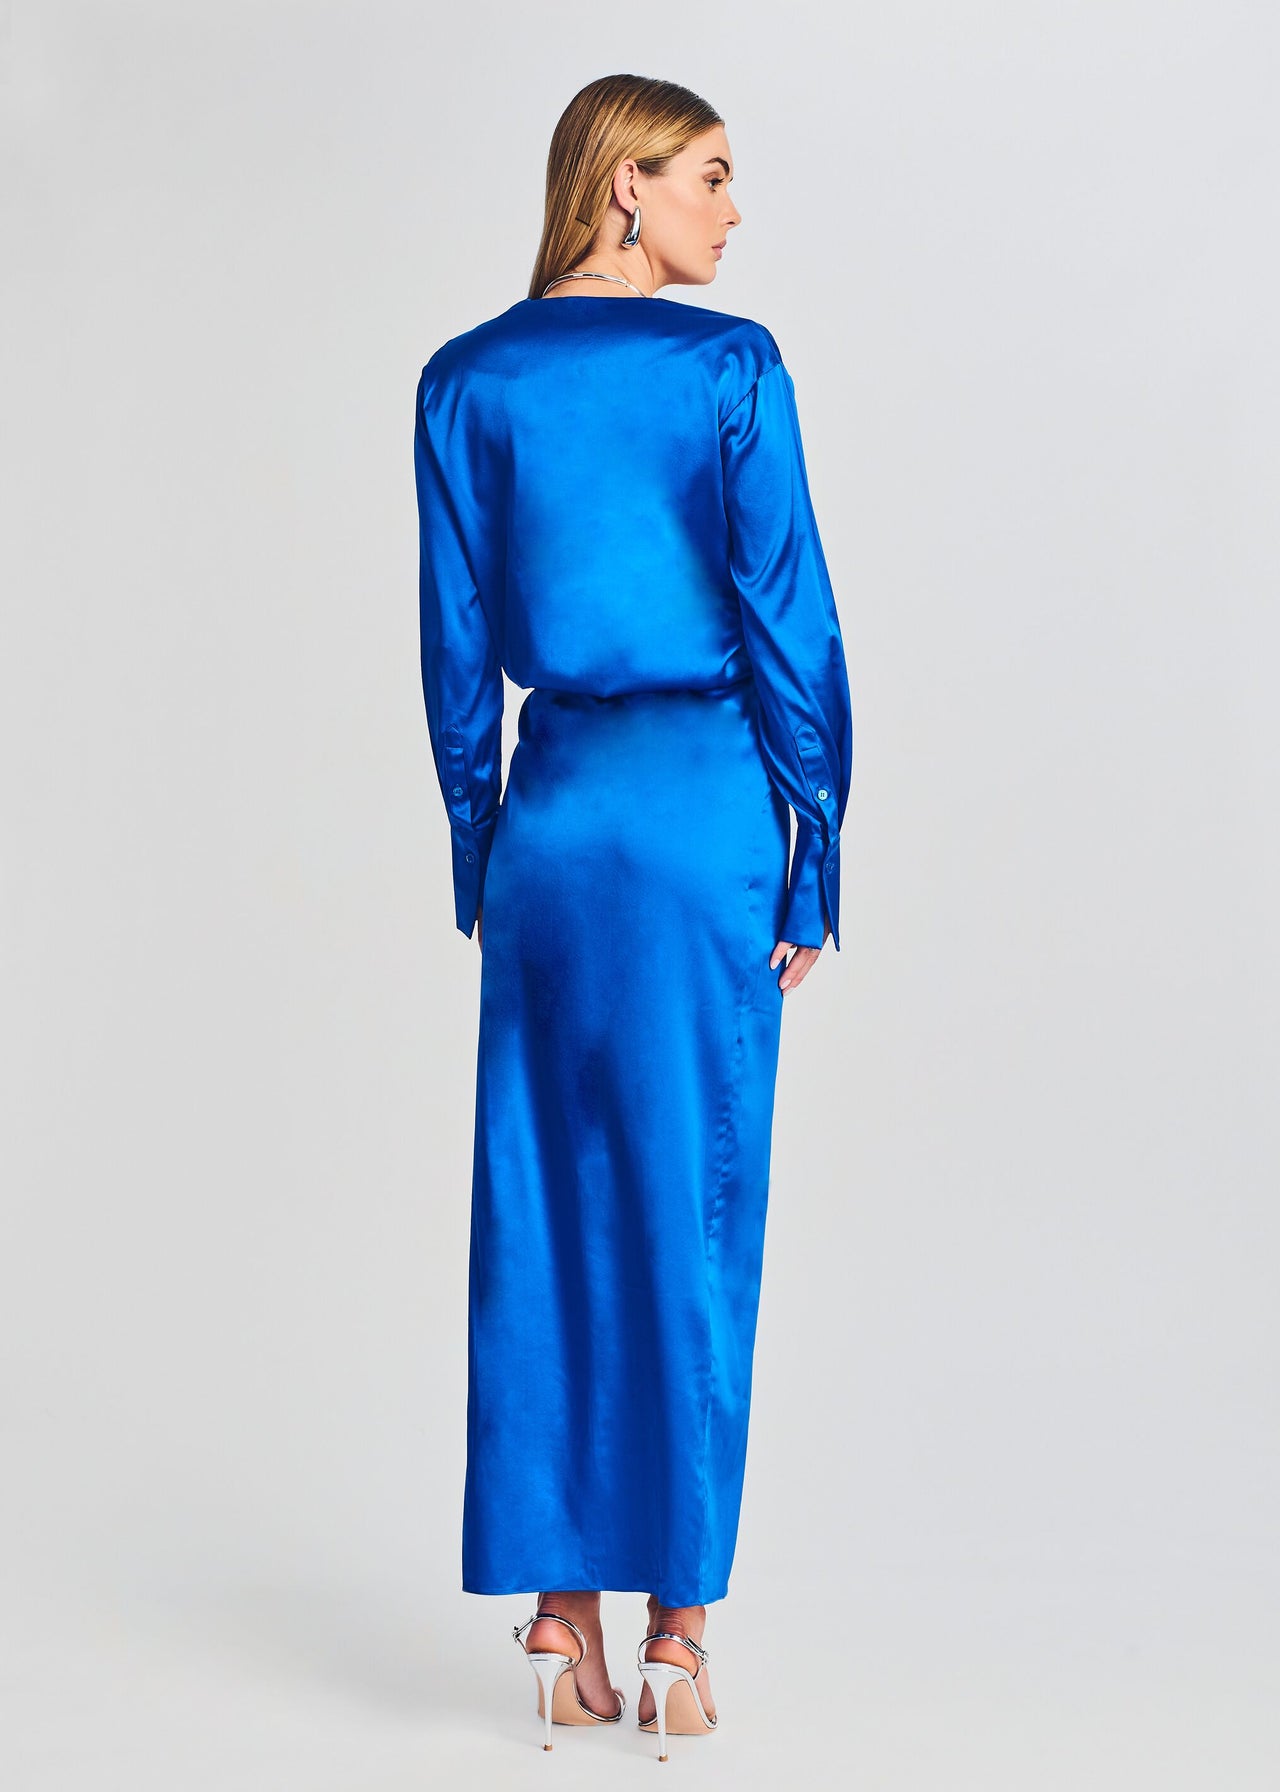 SABRINA Velour Long Sleeved Body in Teal Blue. Blue Velvet